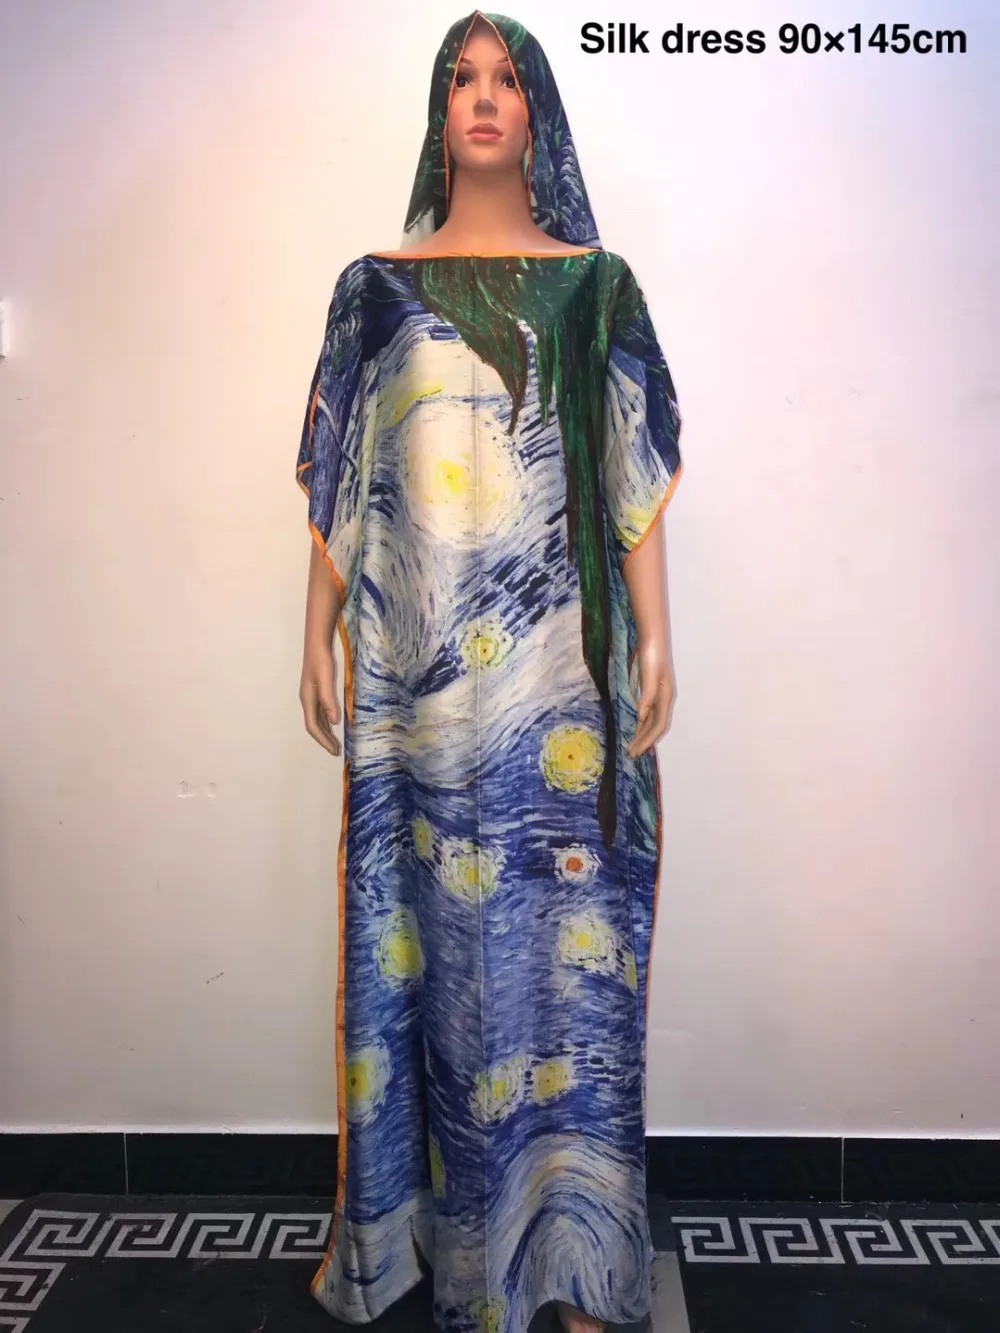 Новая мода кафтан шелковые платья Длина 145 см бюст 90 см африканские женские шелковые длинные халаты матч шарф африканские платья для женщин